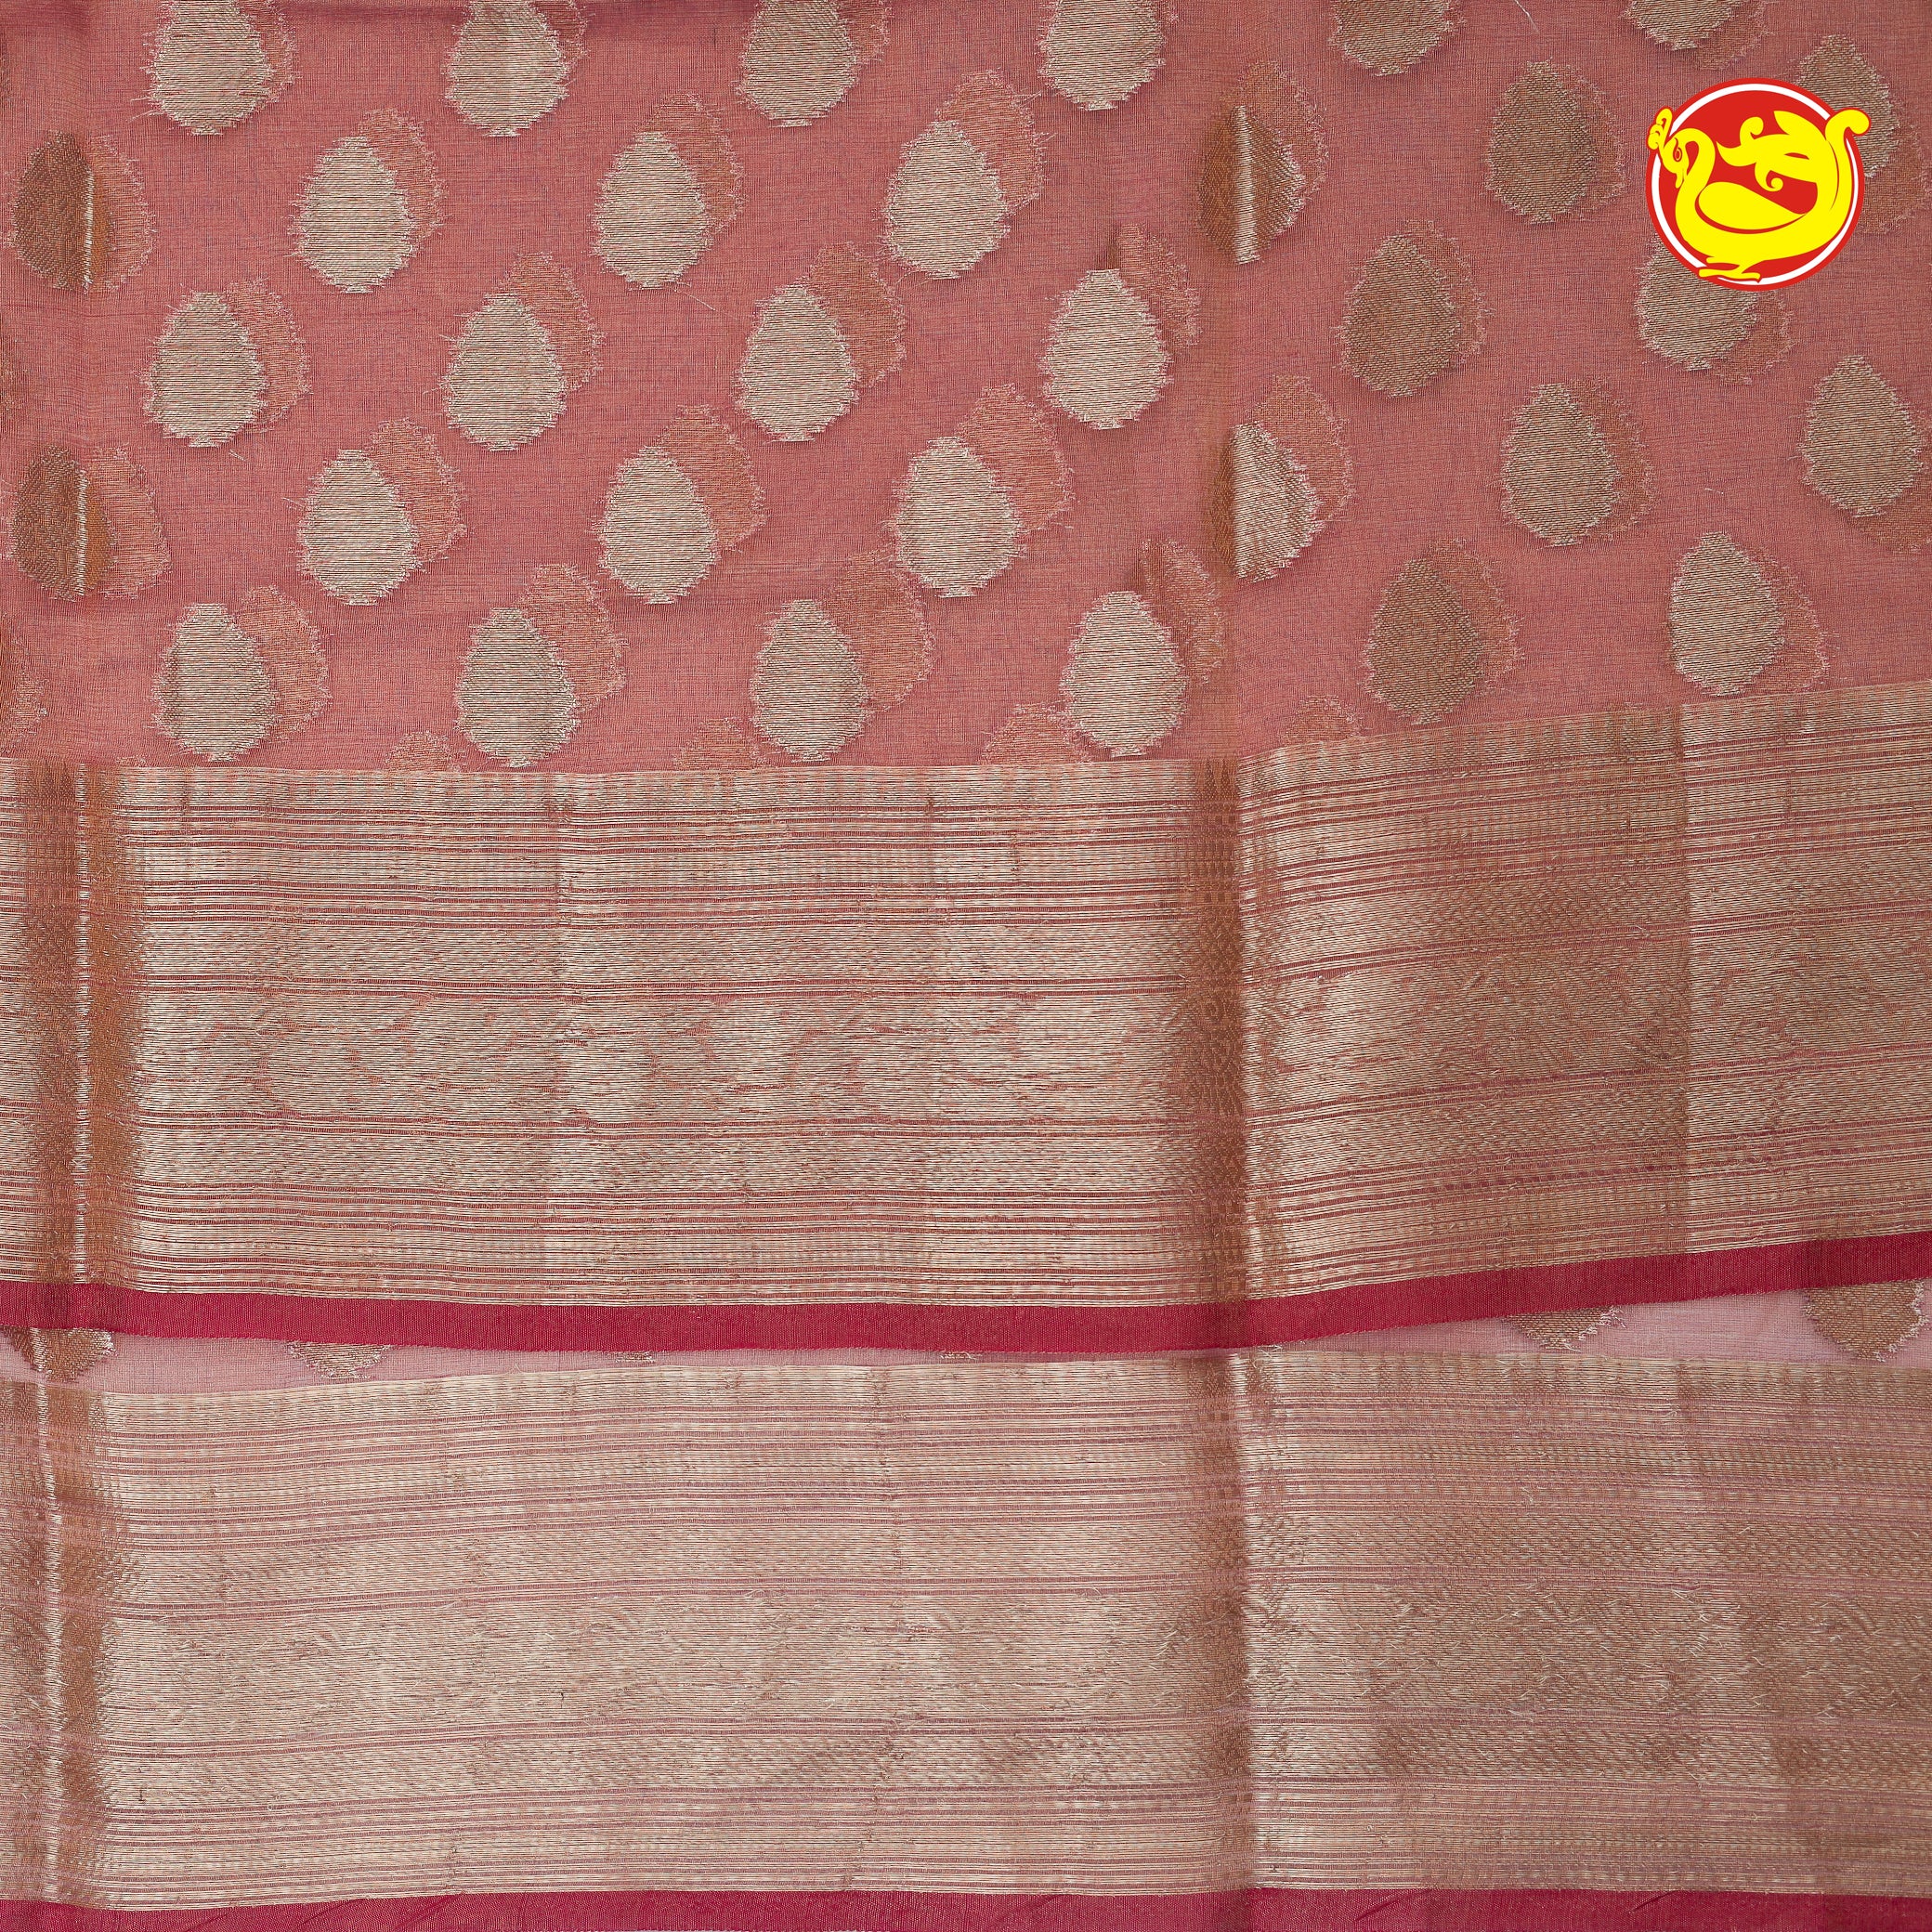 Red Semi-Tissue Saree With Unique Buttas, Traditional Zari Border & Pallu Of Intricate Designs